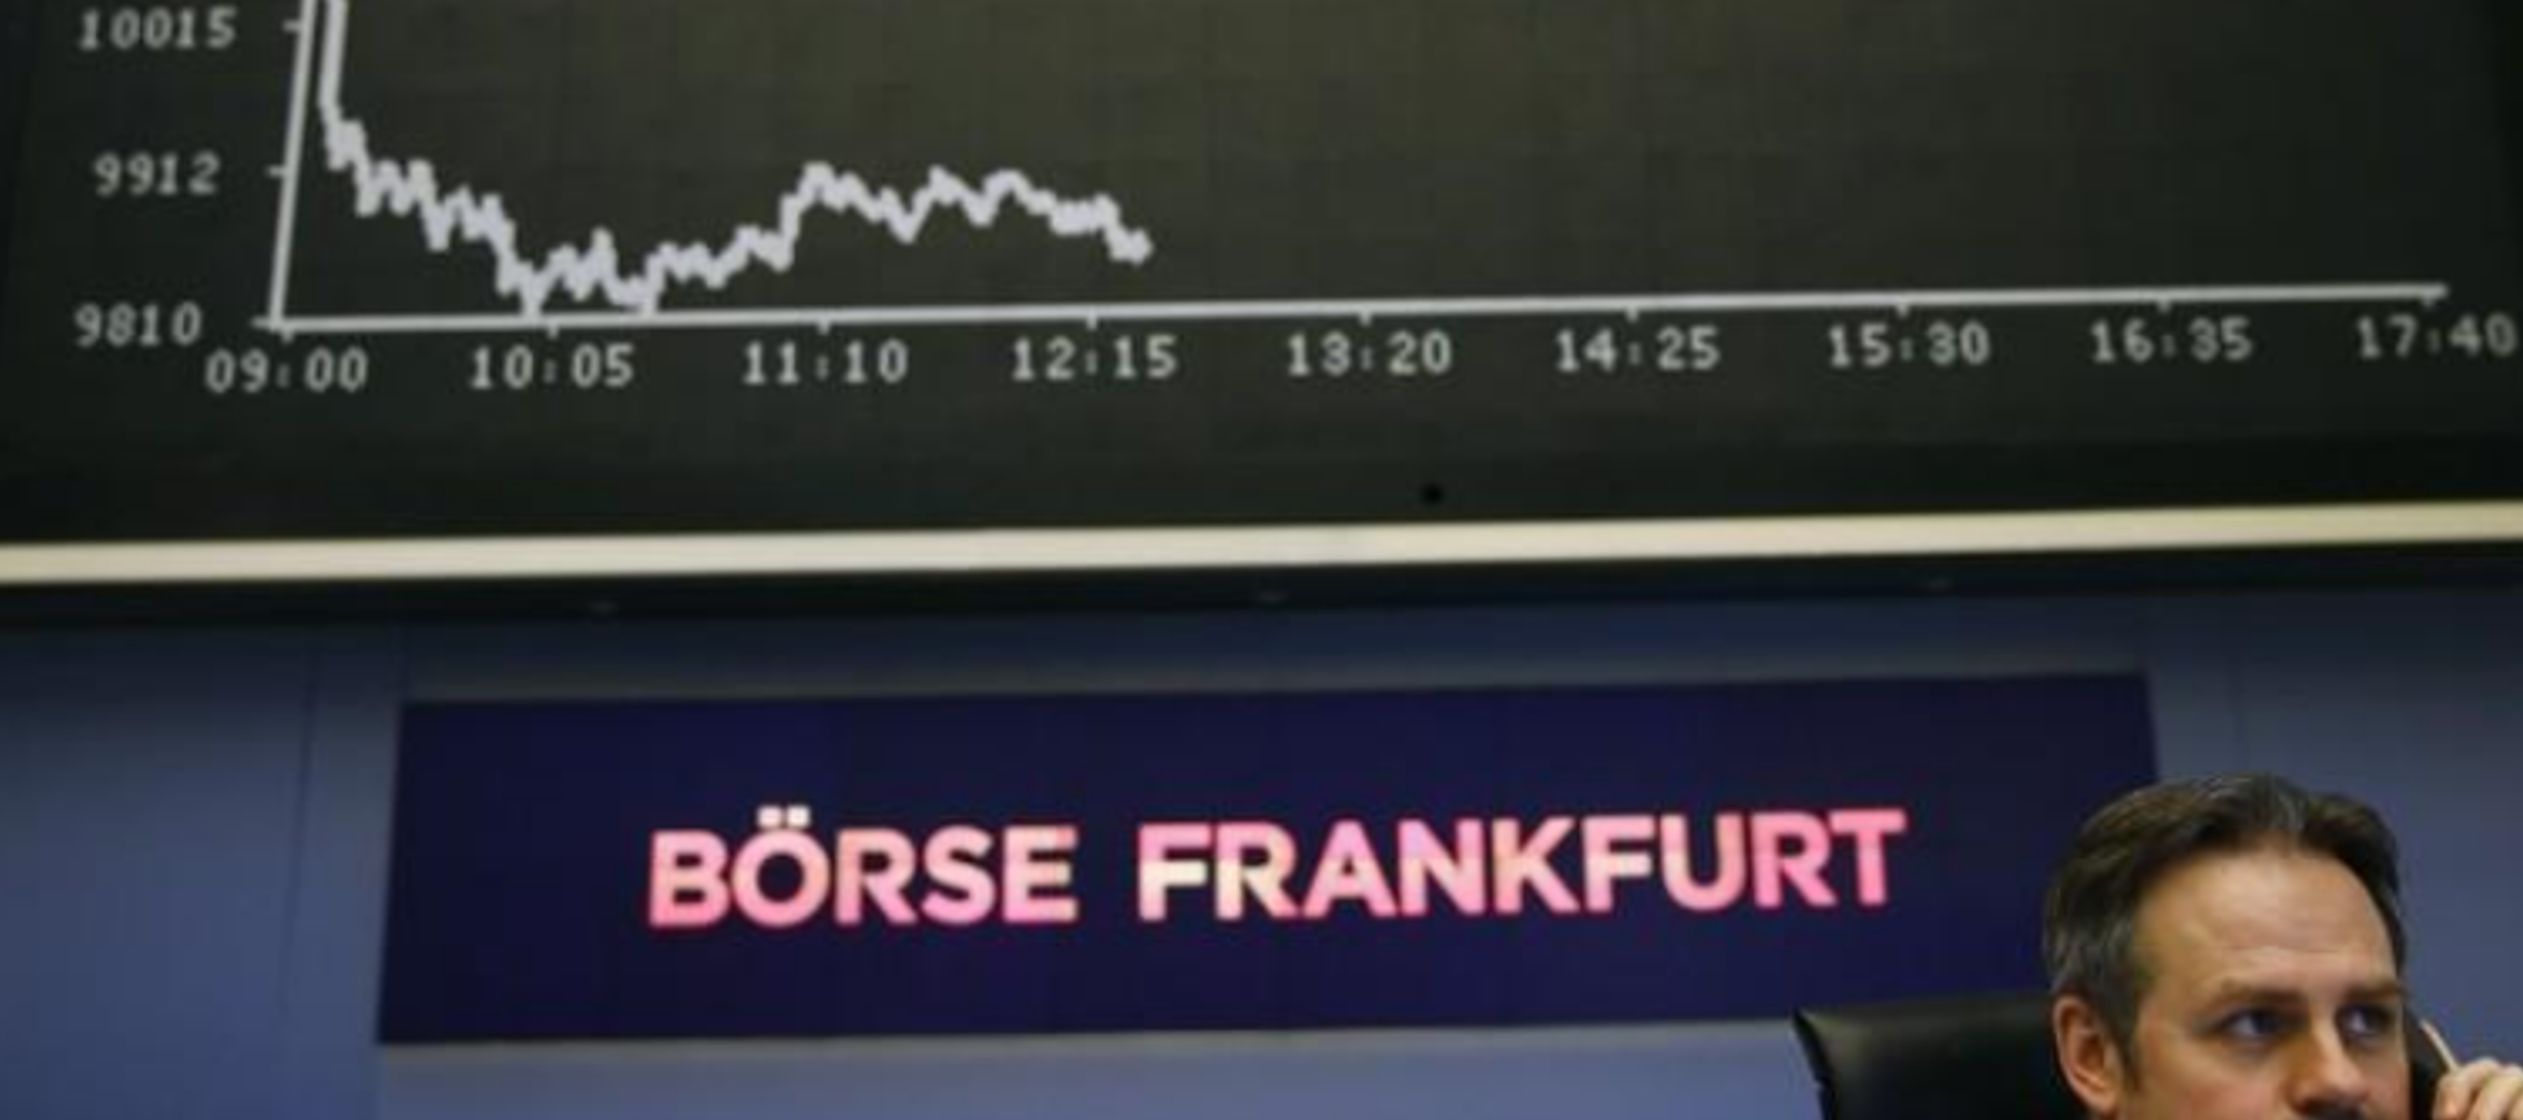 El índice de acciones paneuropeas STOXX 600 subió por séptimo día...